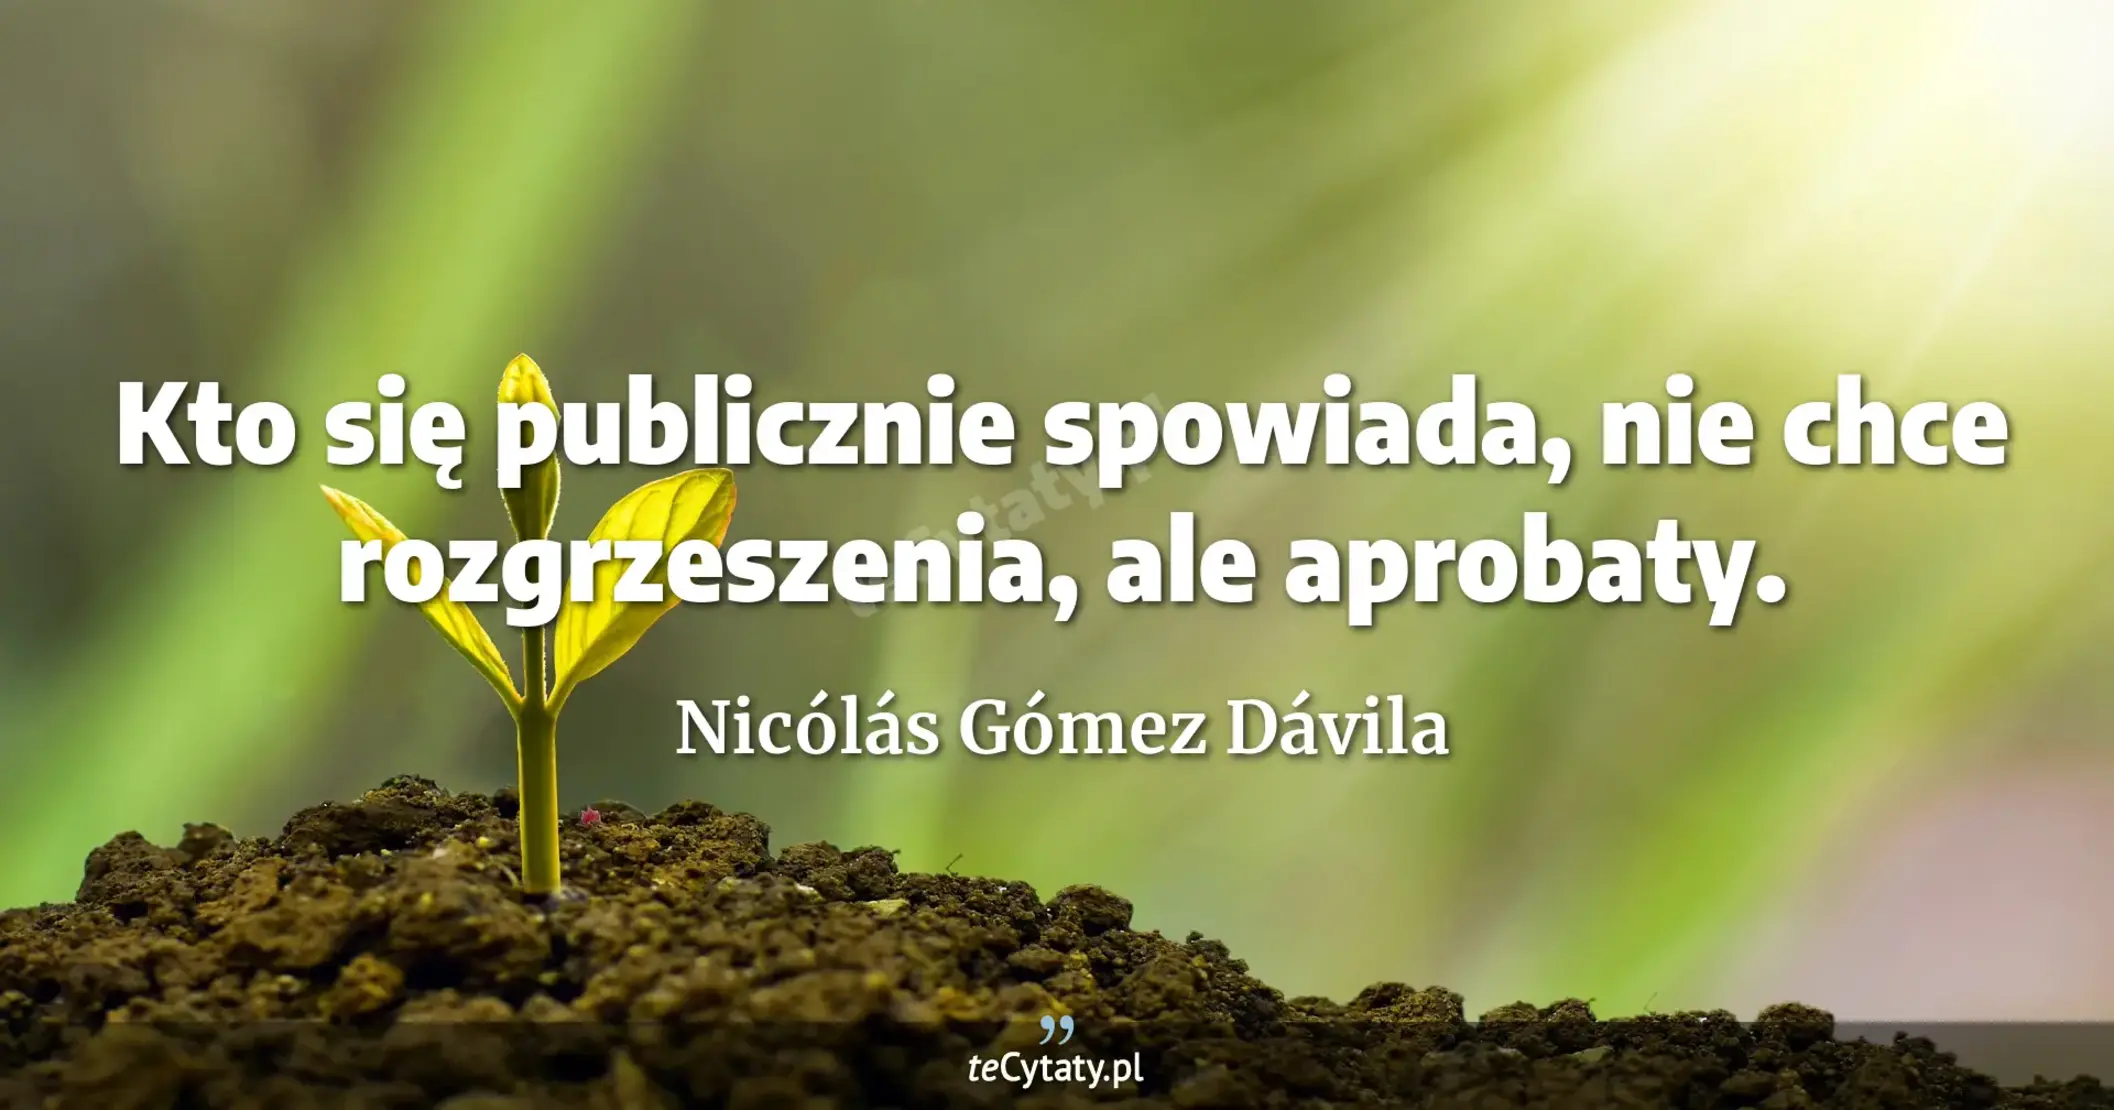 Kto się publicznie spowiada, nie chce rozgrzeszenia, ale aprobaty. - Nicólás Gómez Dávila